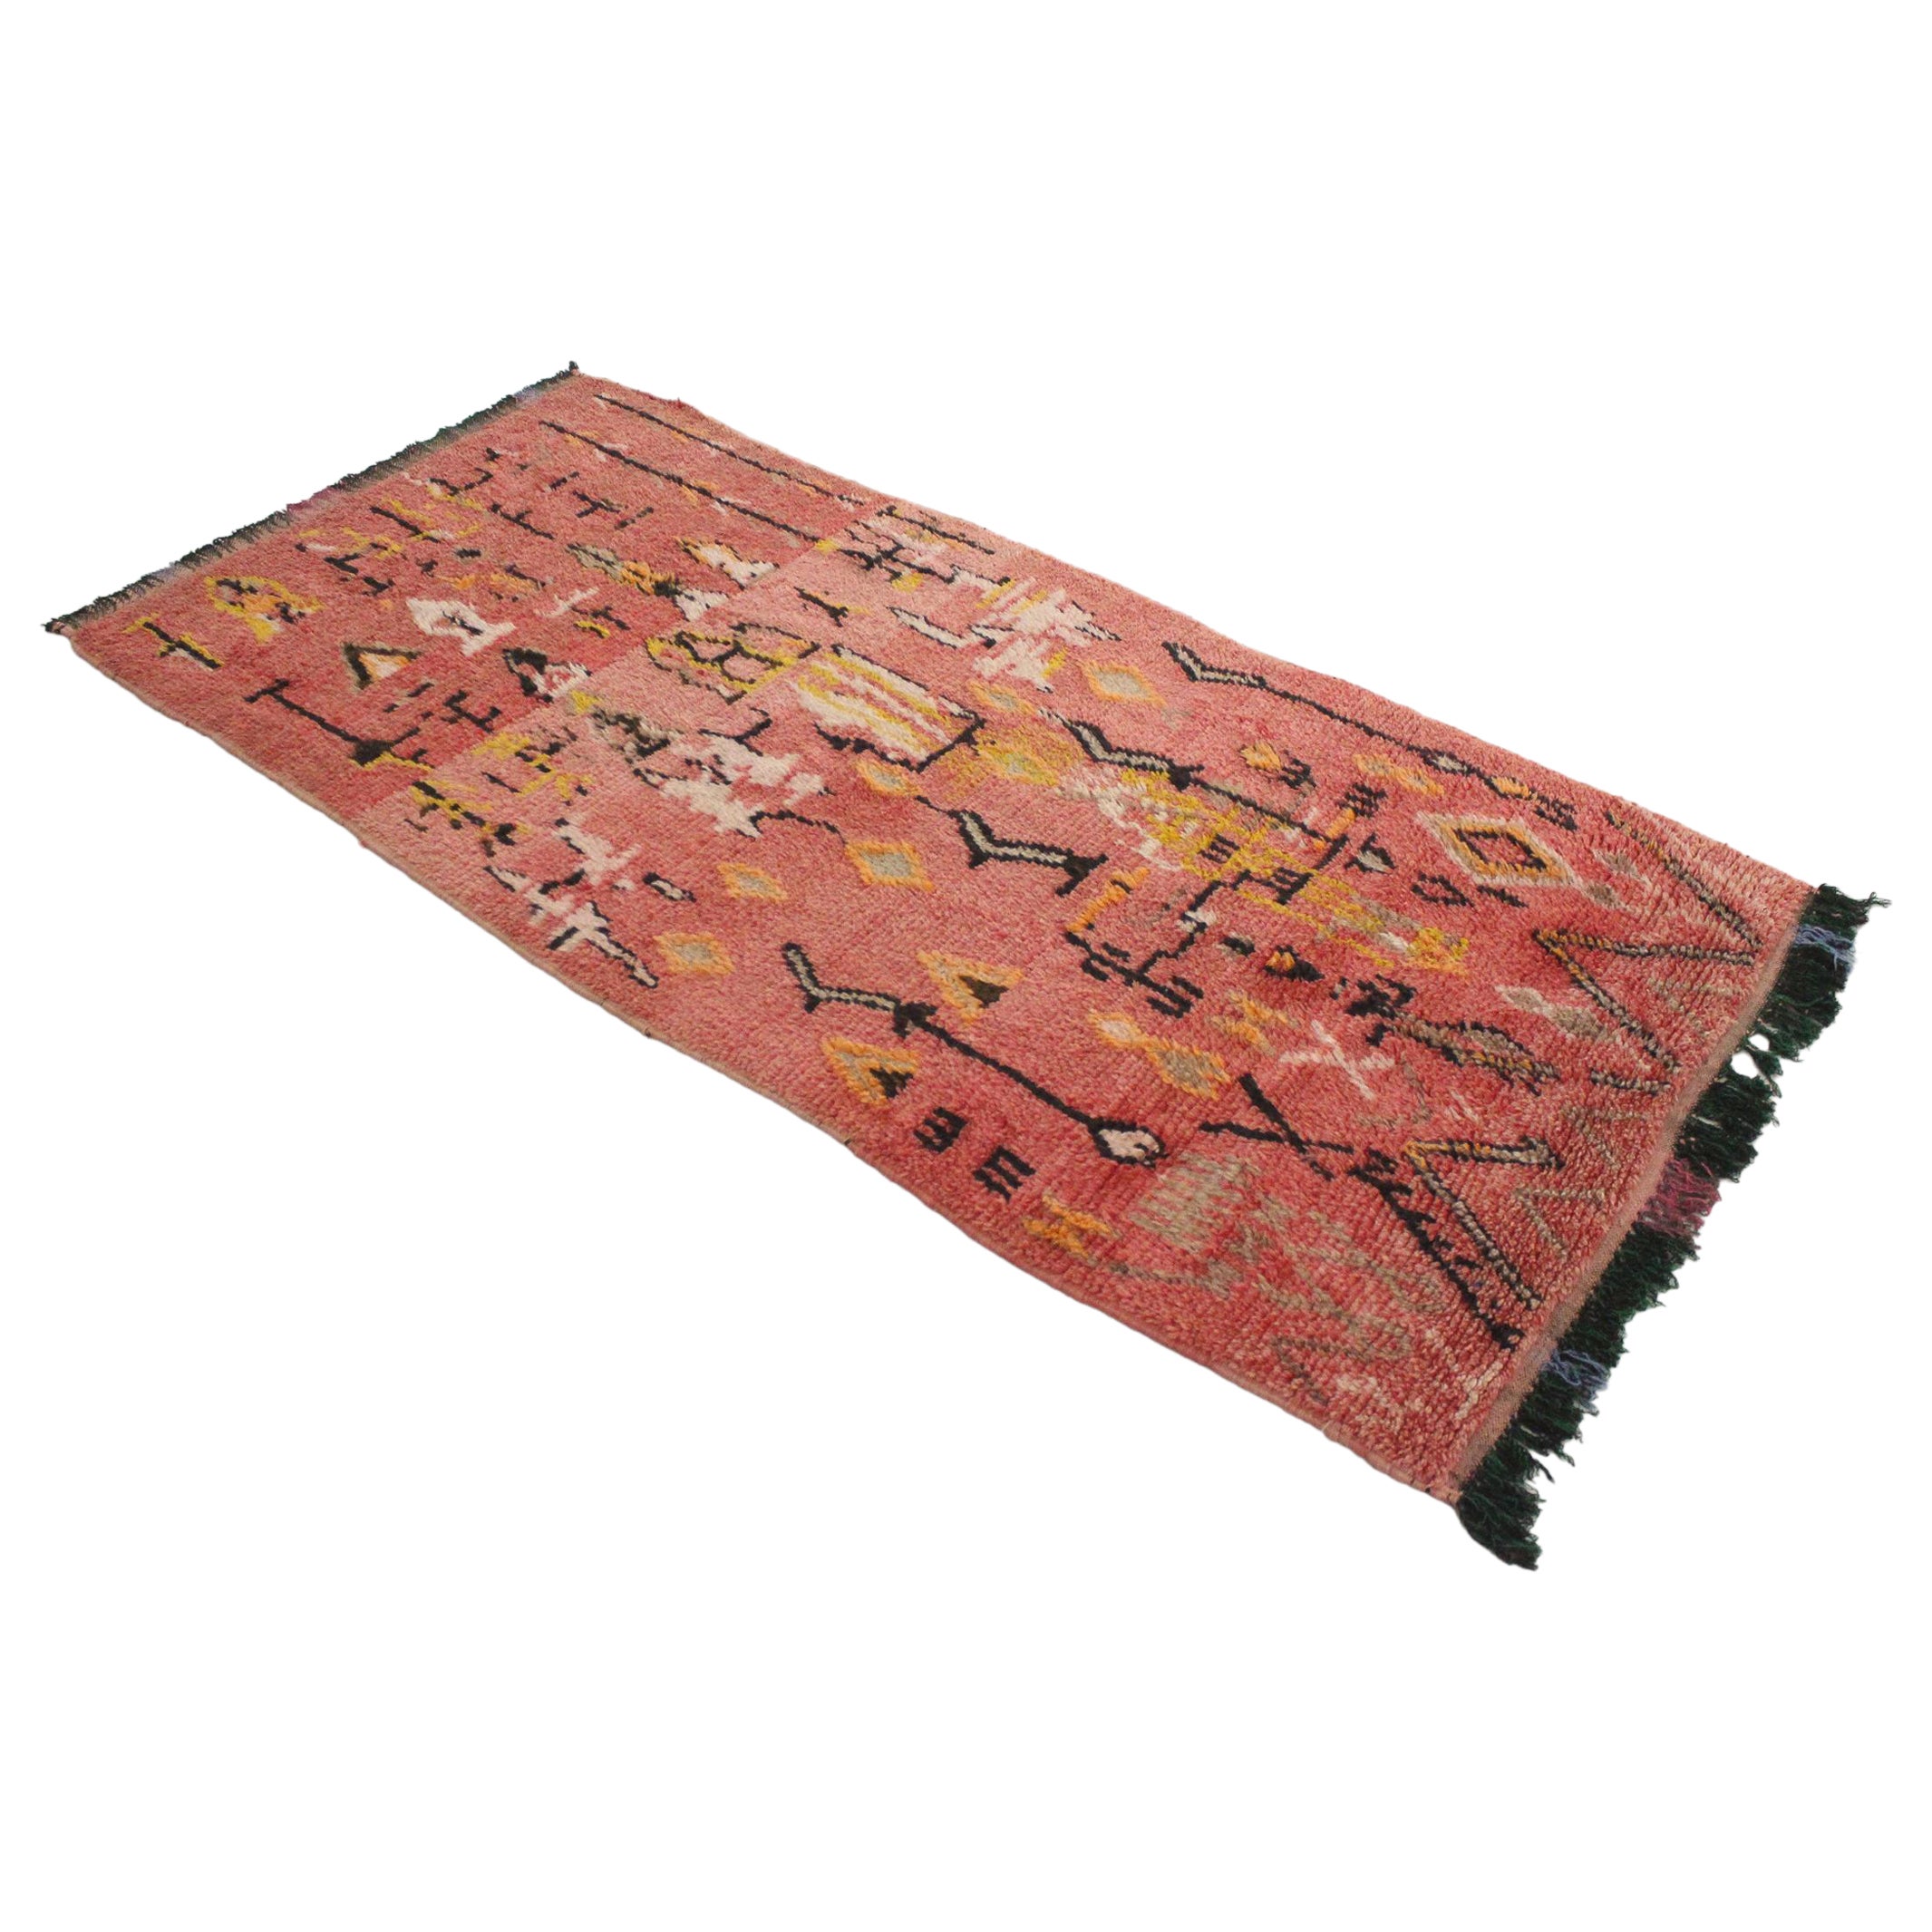 Vintage marokkanischen Azilal Teppich - Rosa und gelb - 3.7x7.7feet / 114x236cm im Angebot